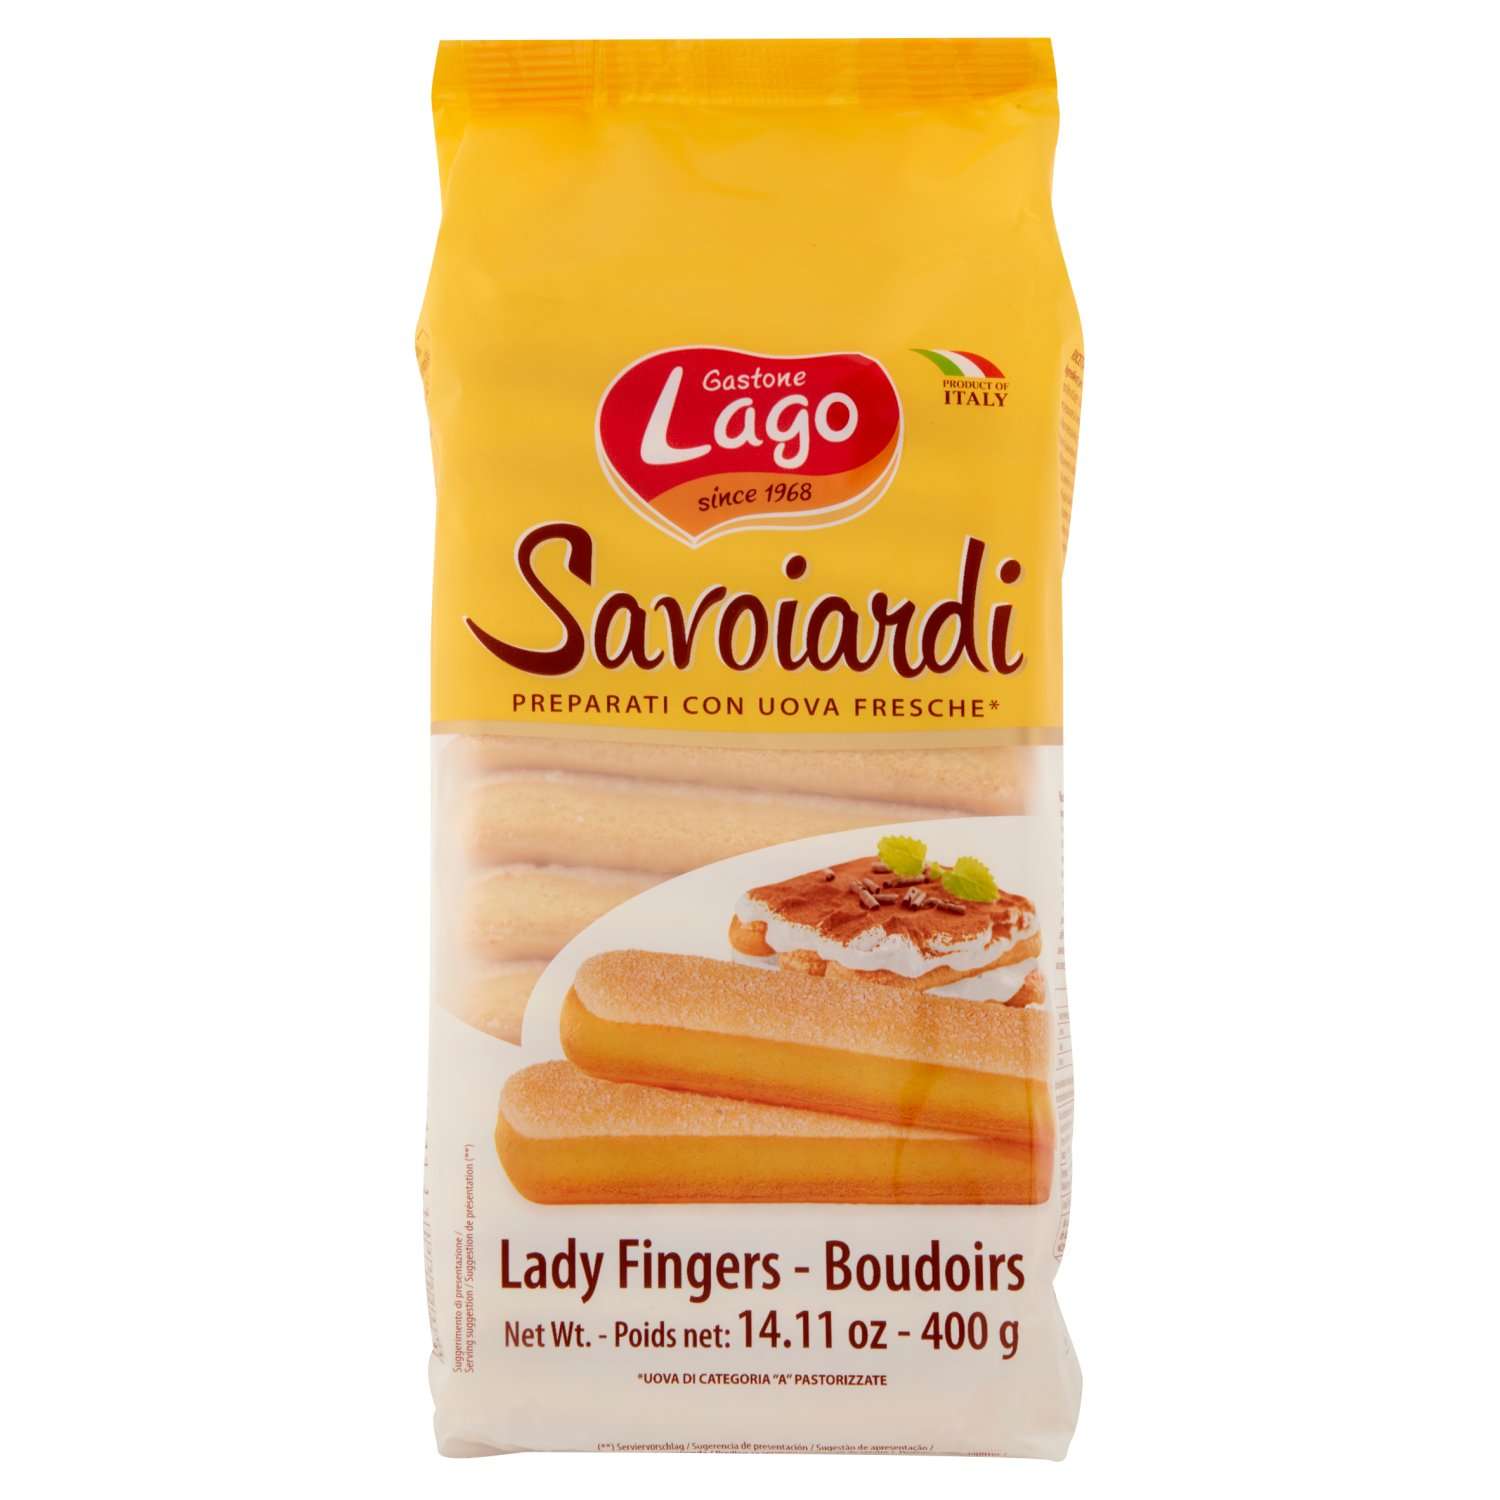 Печенье Савоярди Elledi Gastone Lago бисквитное - фото 1